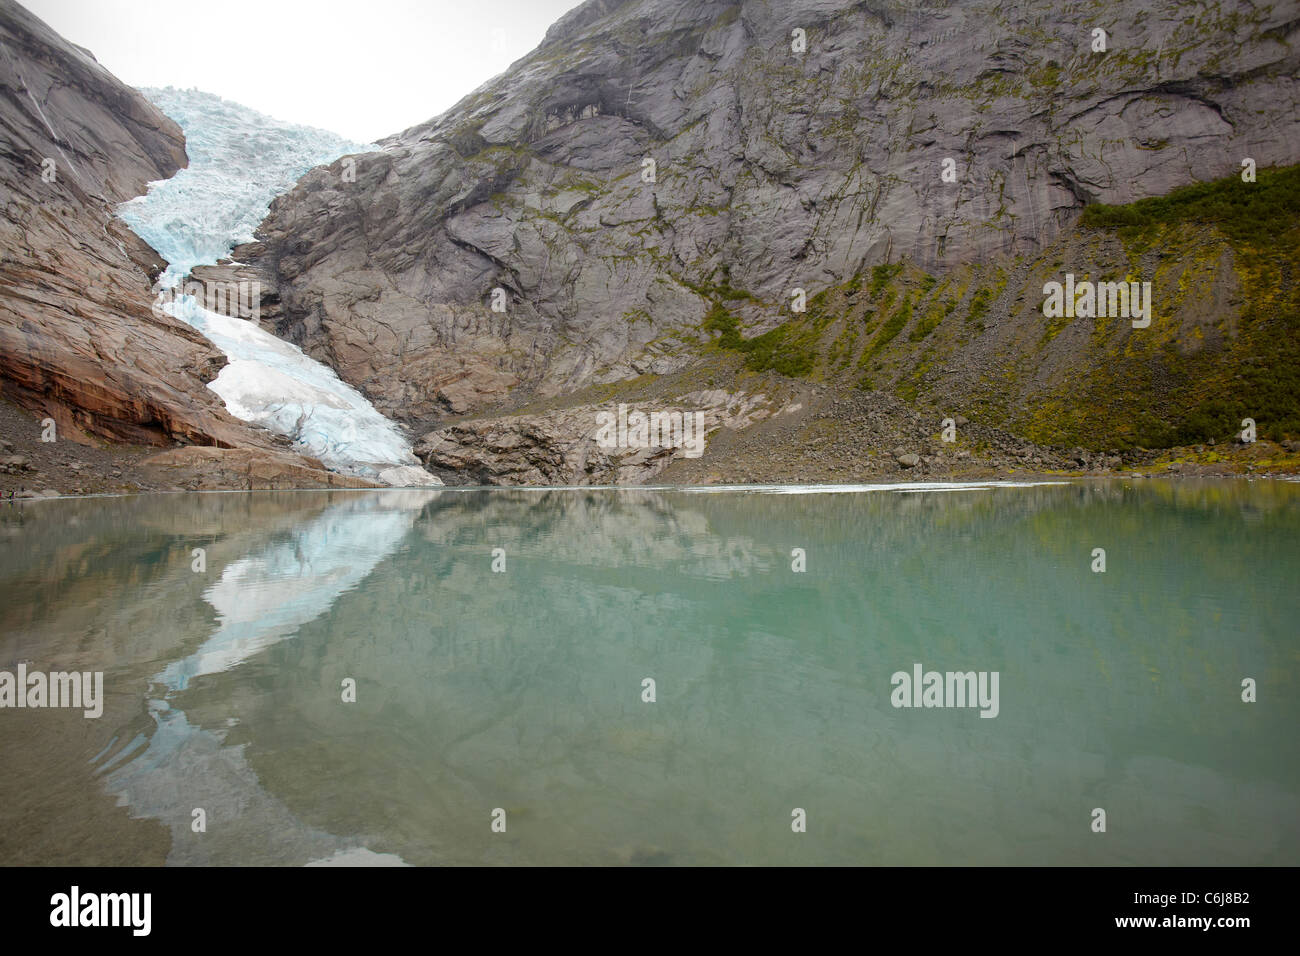 Il Ghiacciaio Briksdal, Valle anticato, Norvegia, con il lago glaciale Briksdalbrevatnet in primo piano Foto Stock